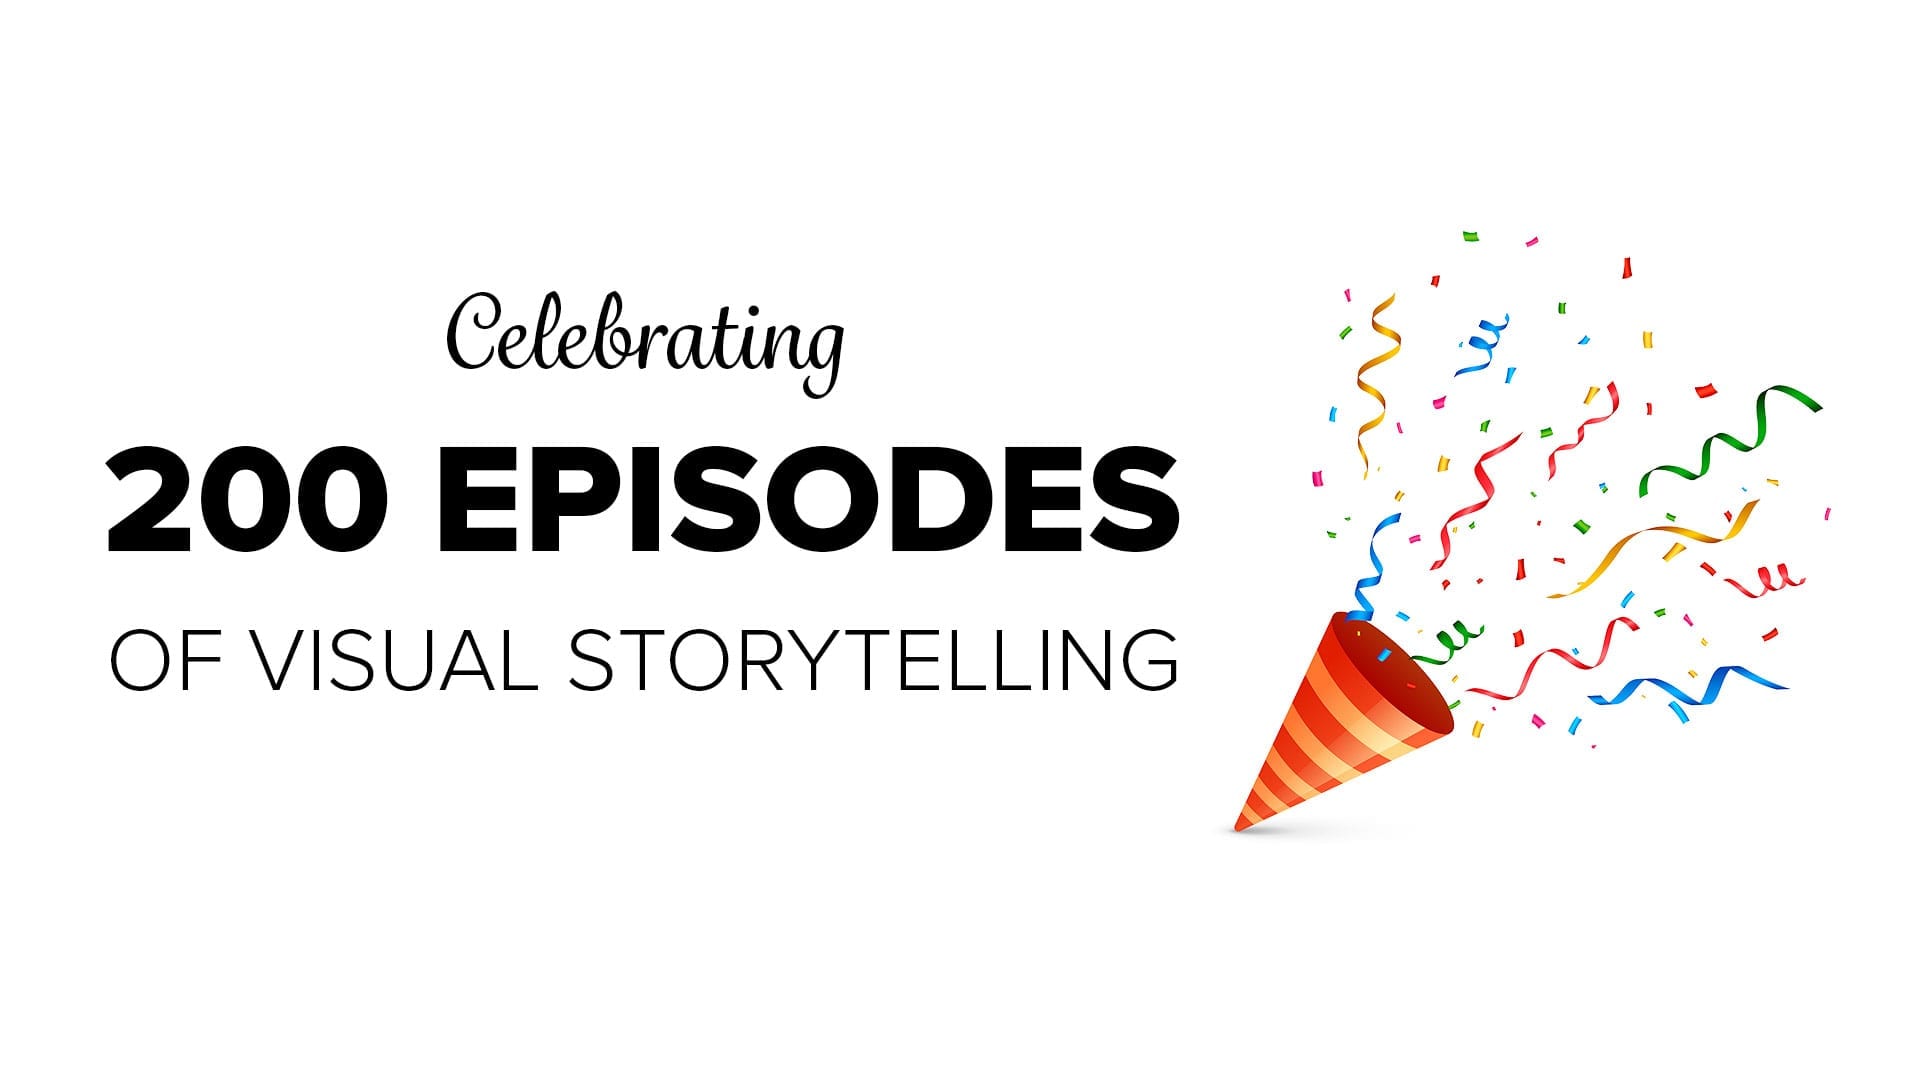 Celebrating 200 Episodes of Visual Storytelling